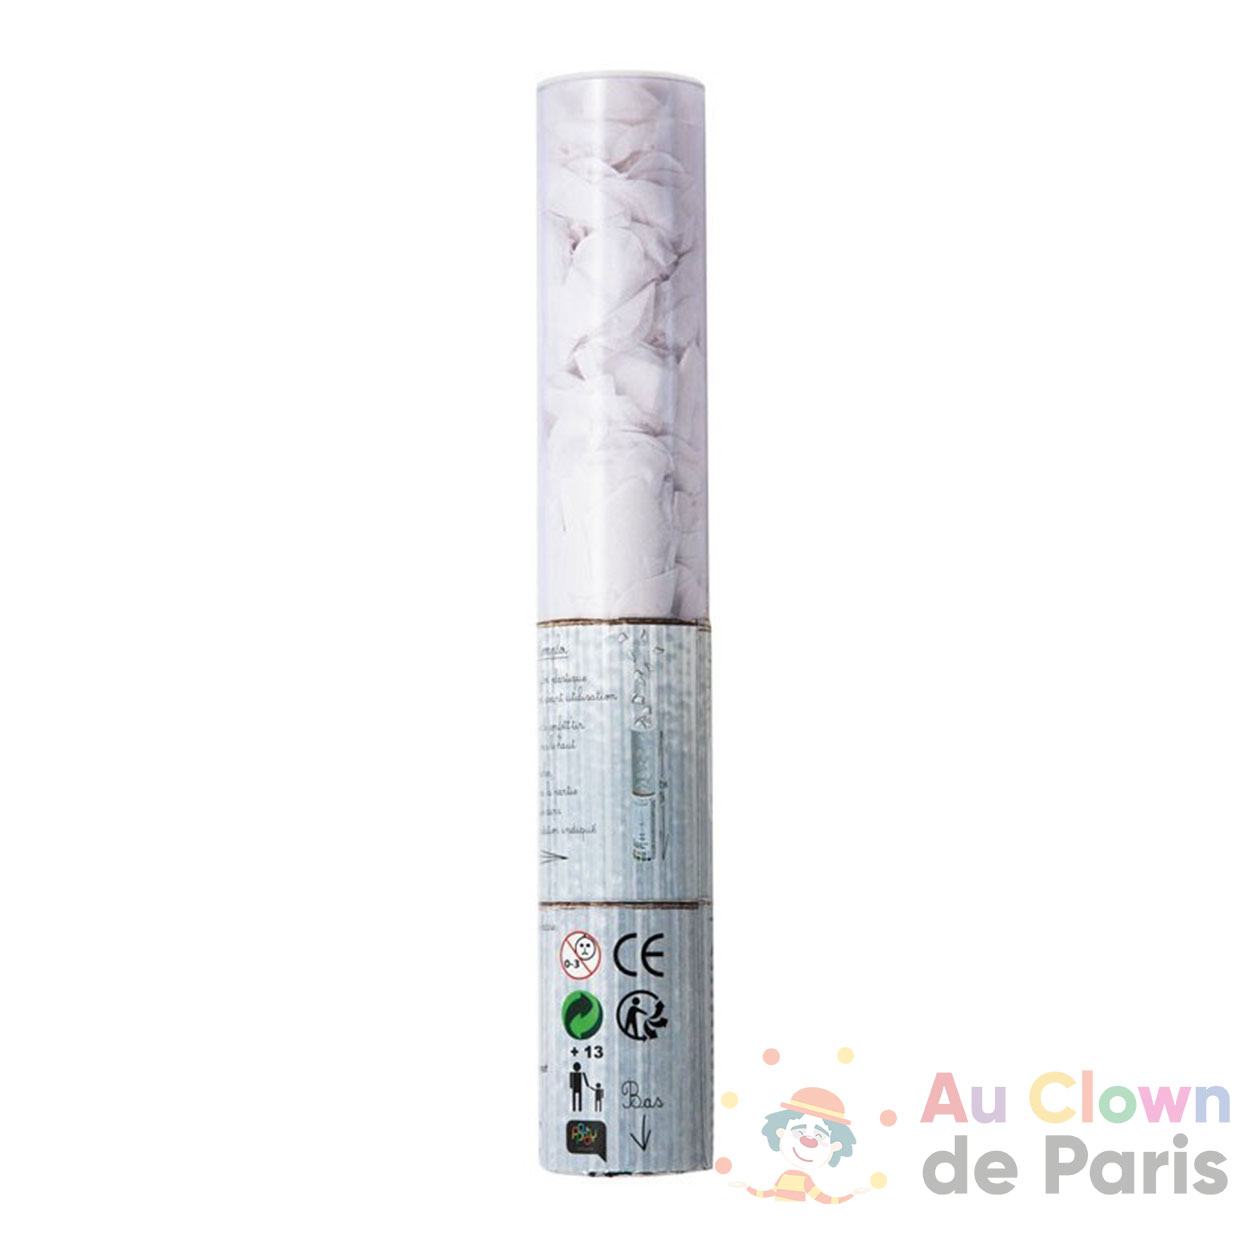 Canon confettis rectangle argent métallisés - Au Clown de Paris